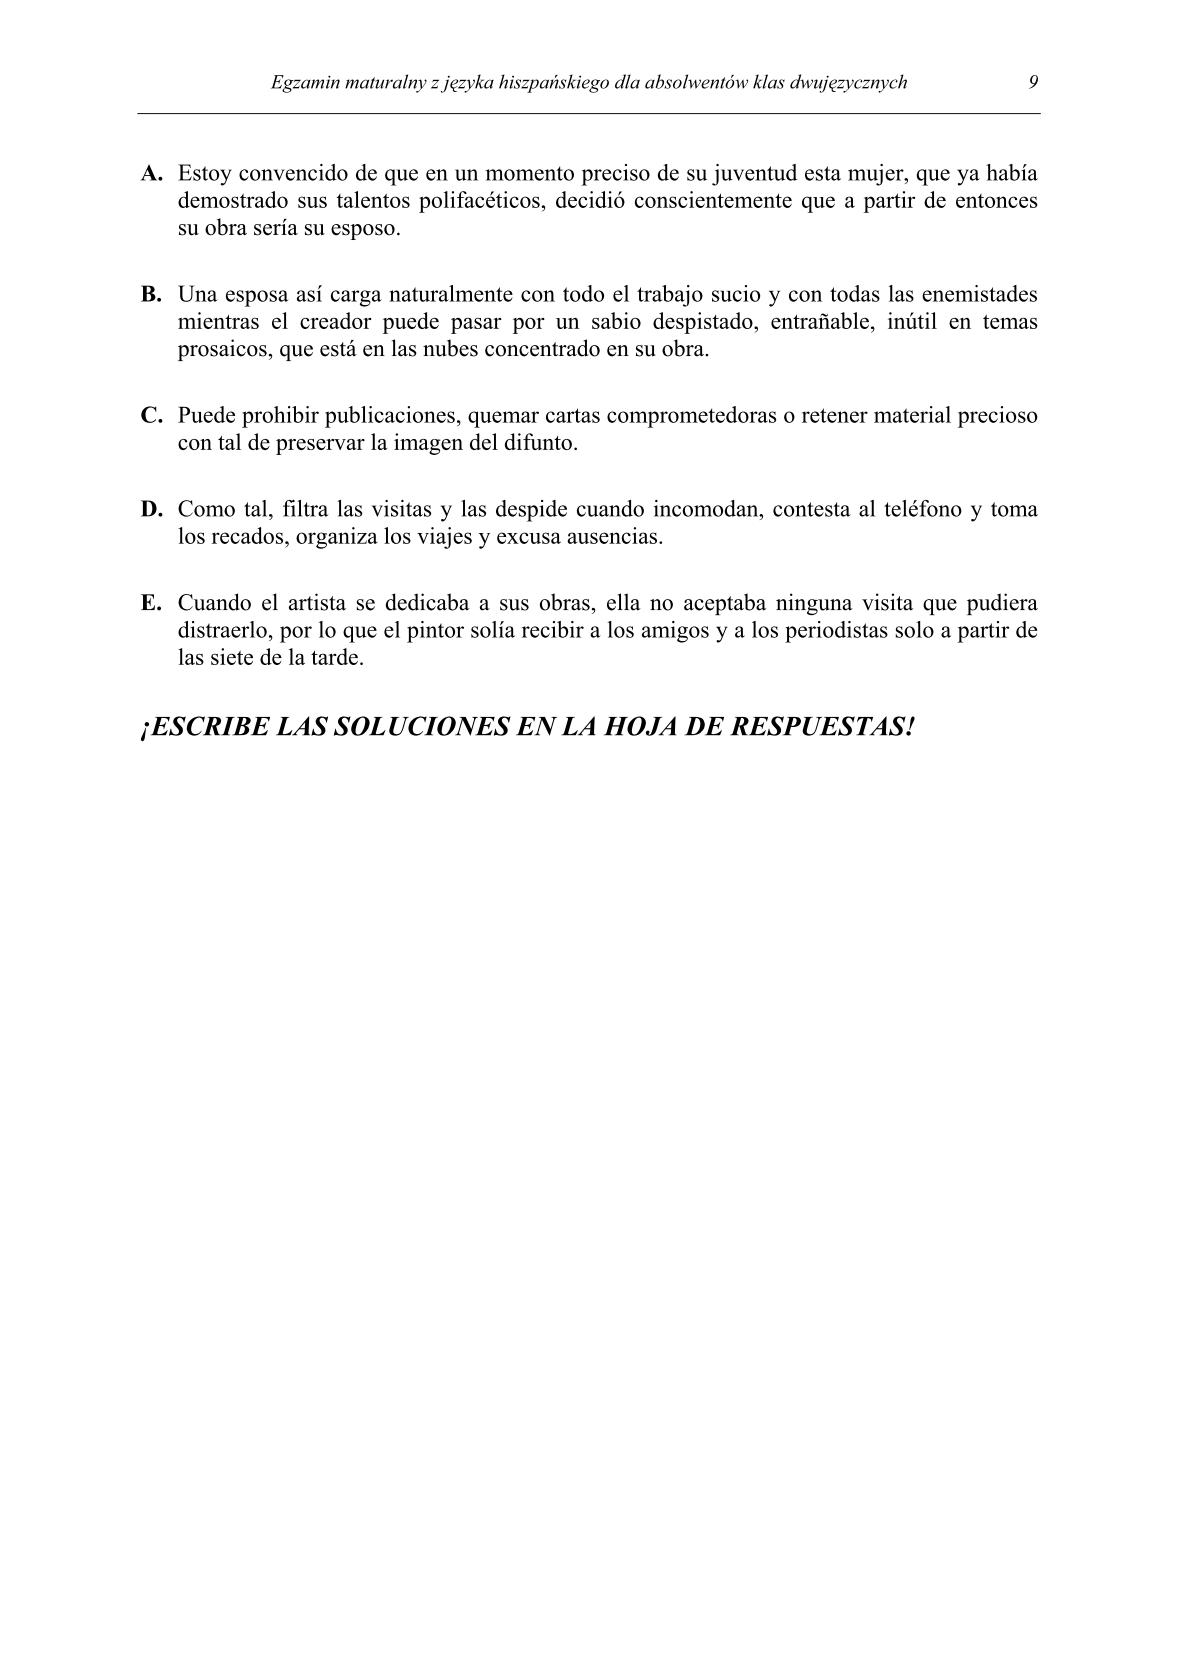 pytania-hiszpanski-dla-absolwentow-klas-dwujezycznych-matura-2014-str.9